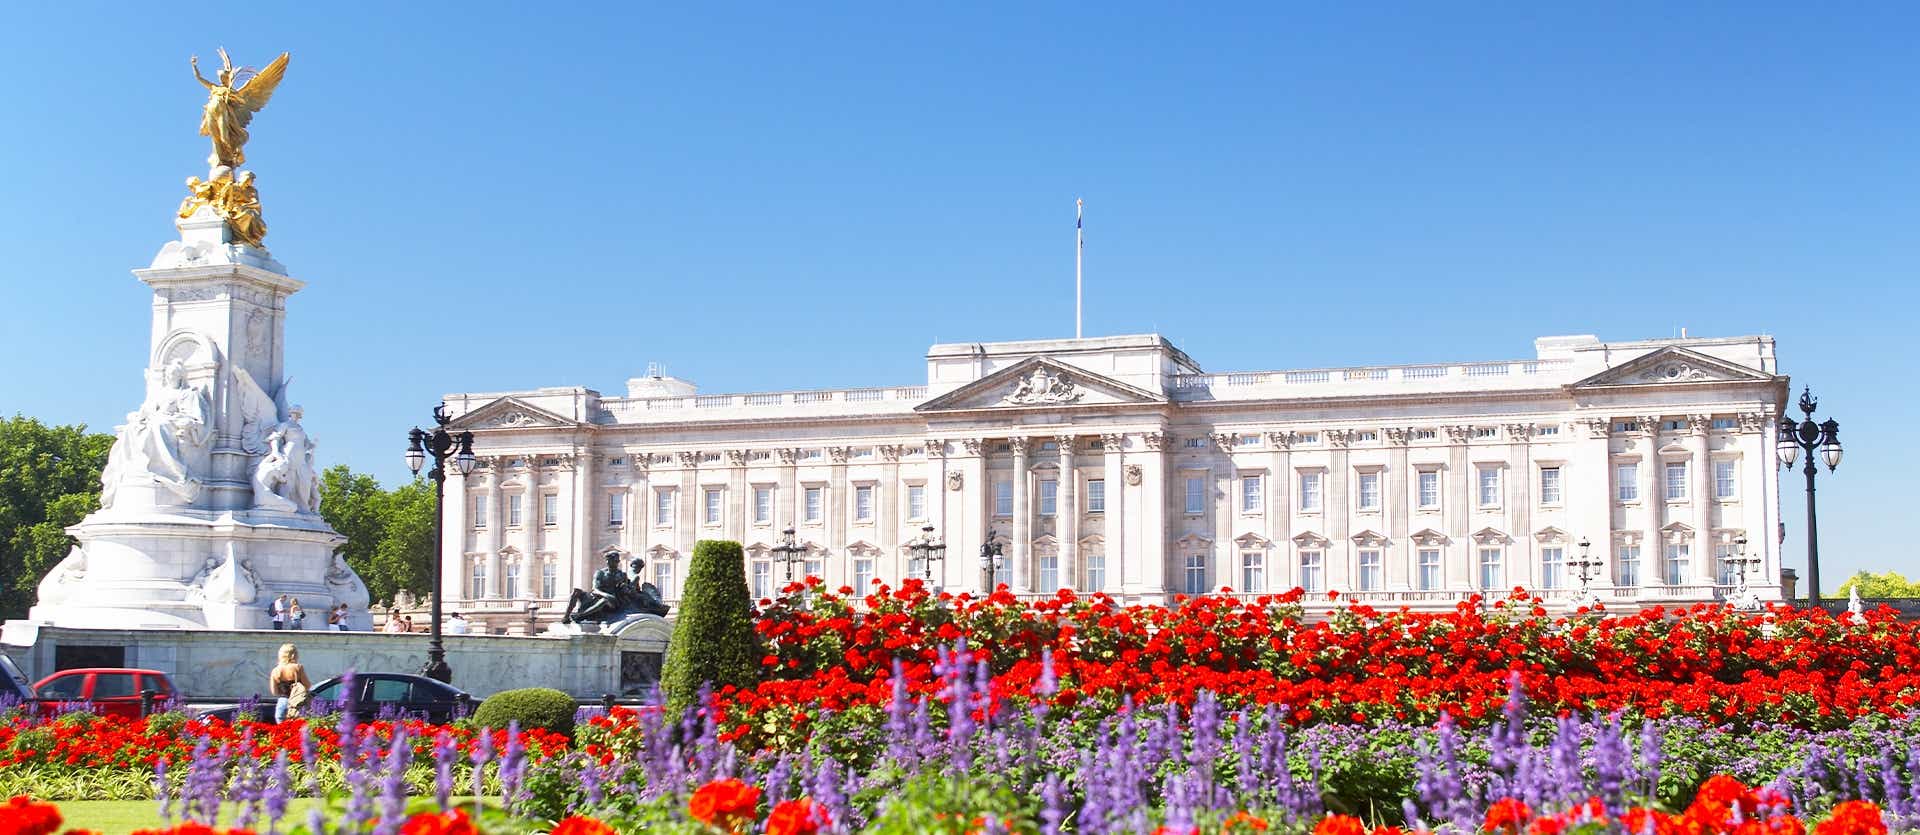 Buckingham Palace  <span class="iconos separador"></span> London  <span class="iconos separador"></span> England